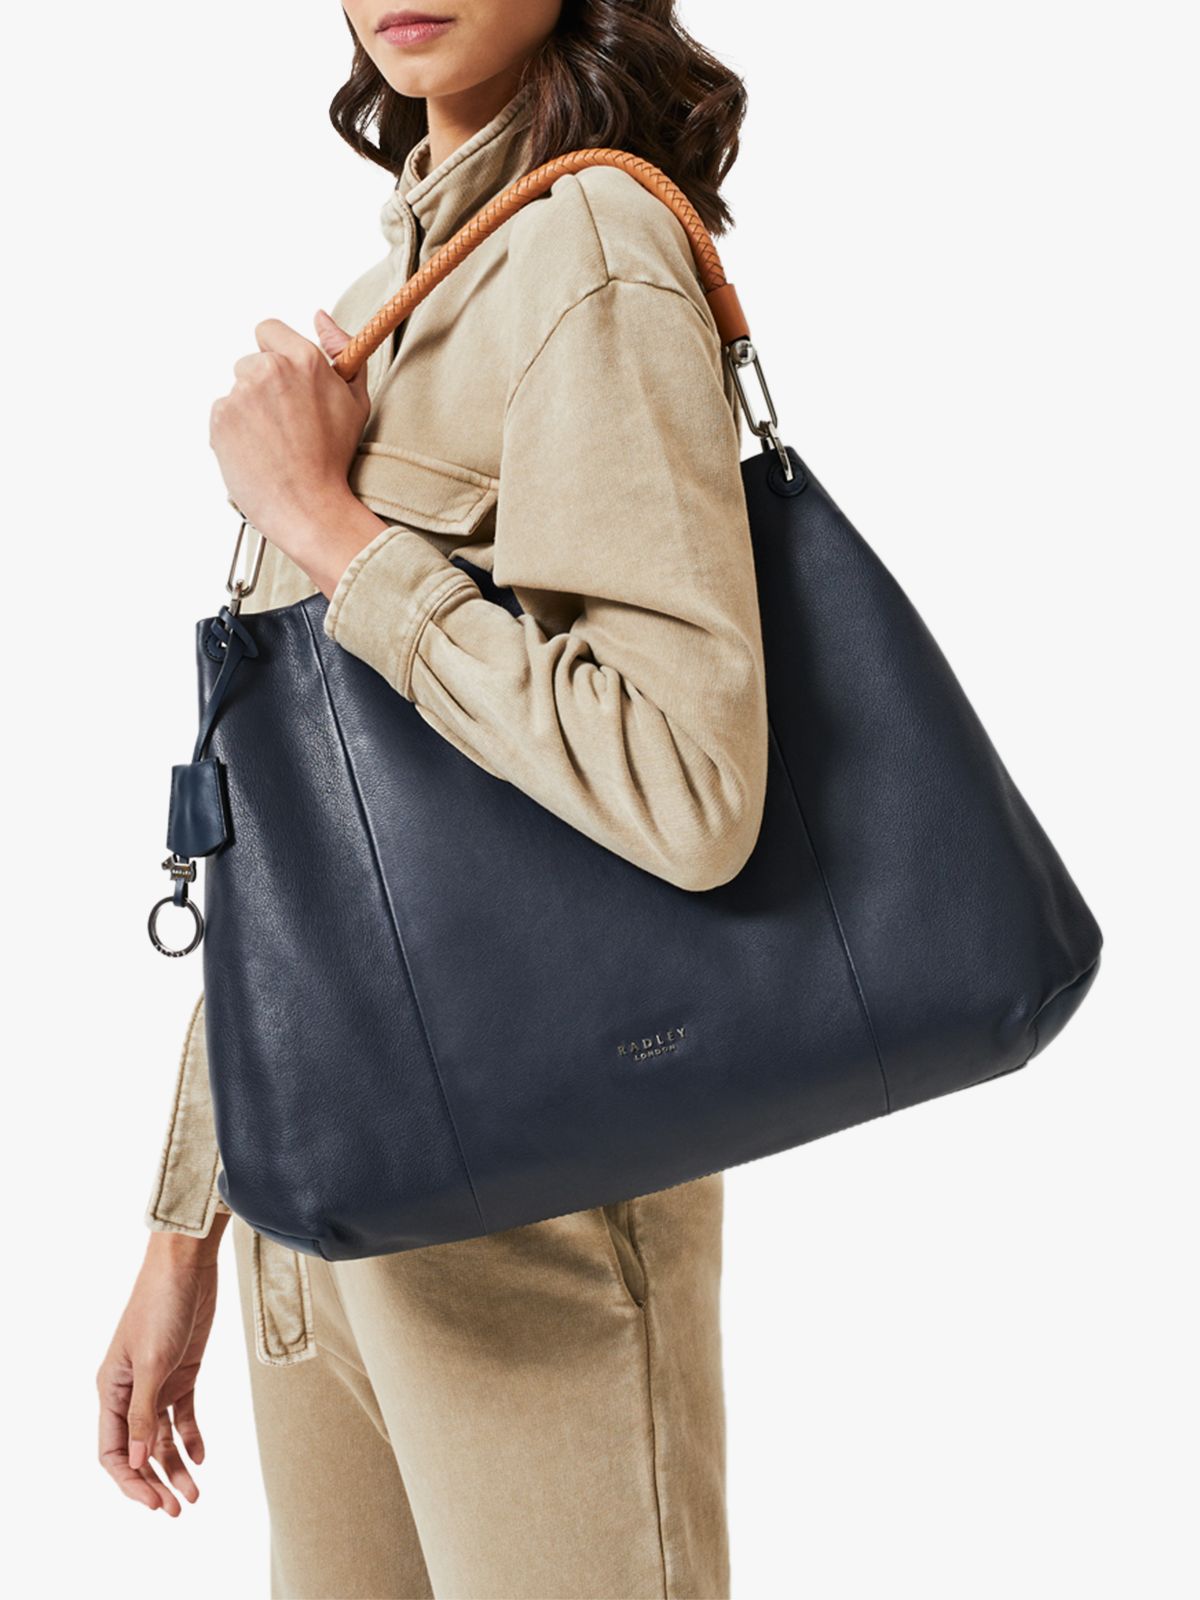 Radley Cuba Street Leather Large Zip Top Shoulder Bag, Ink Blue at